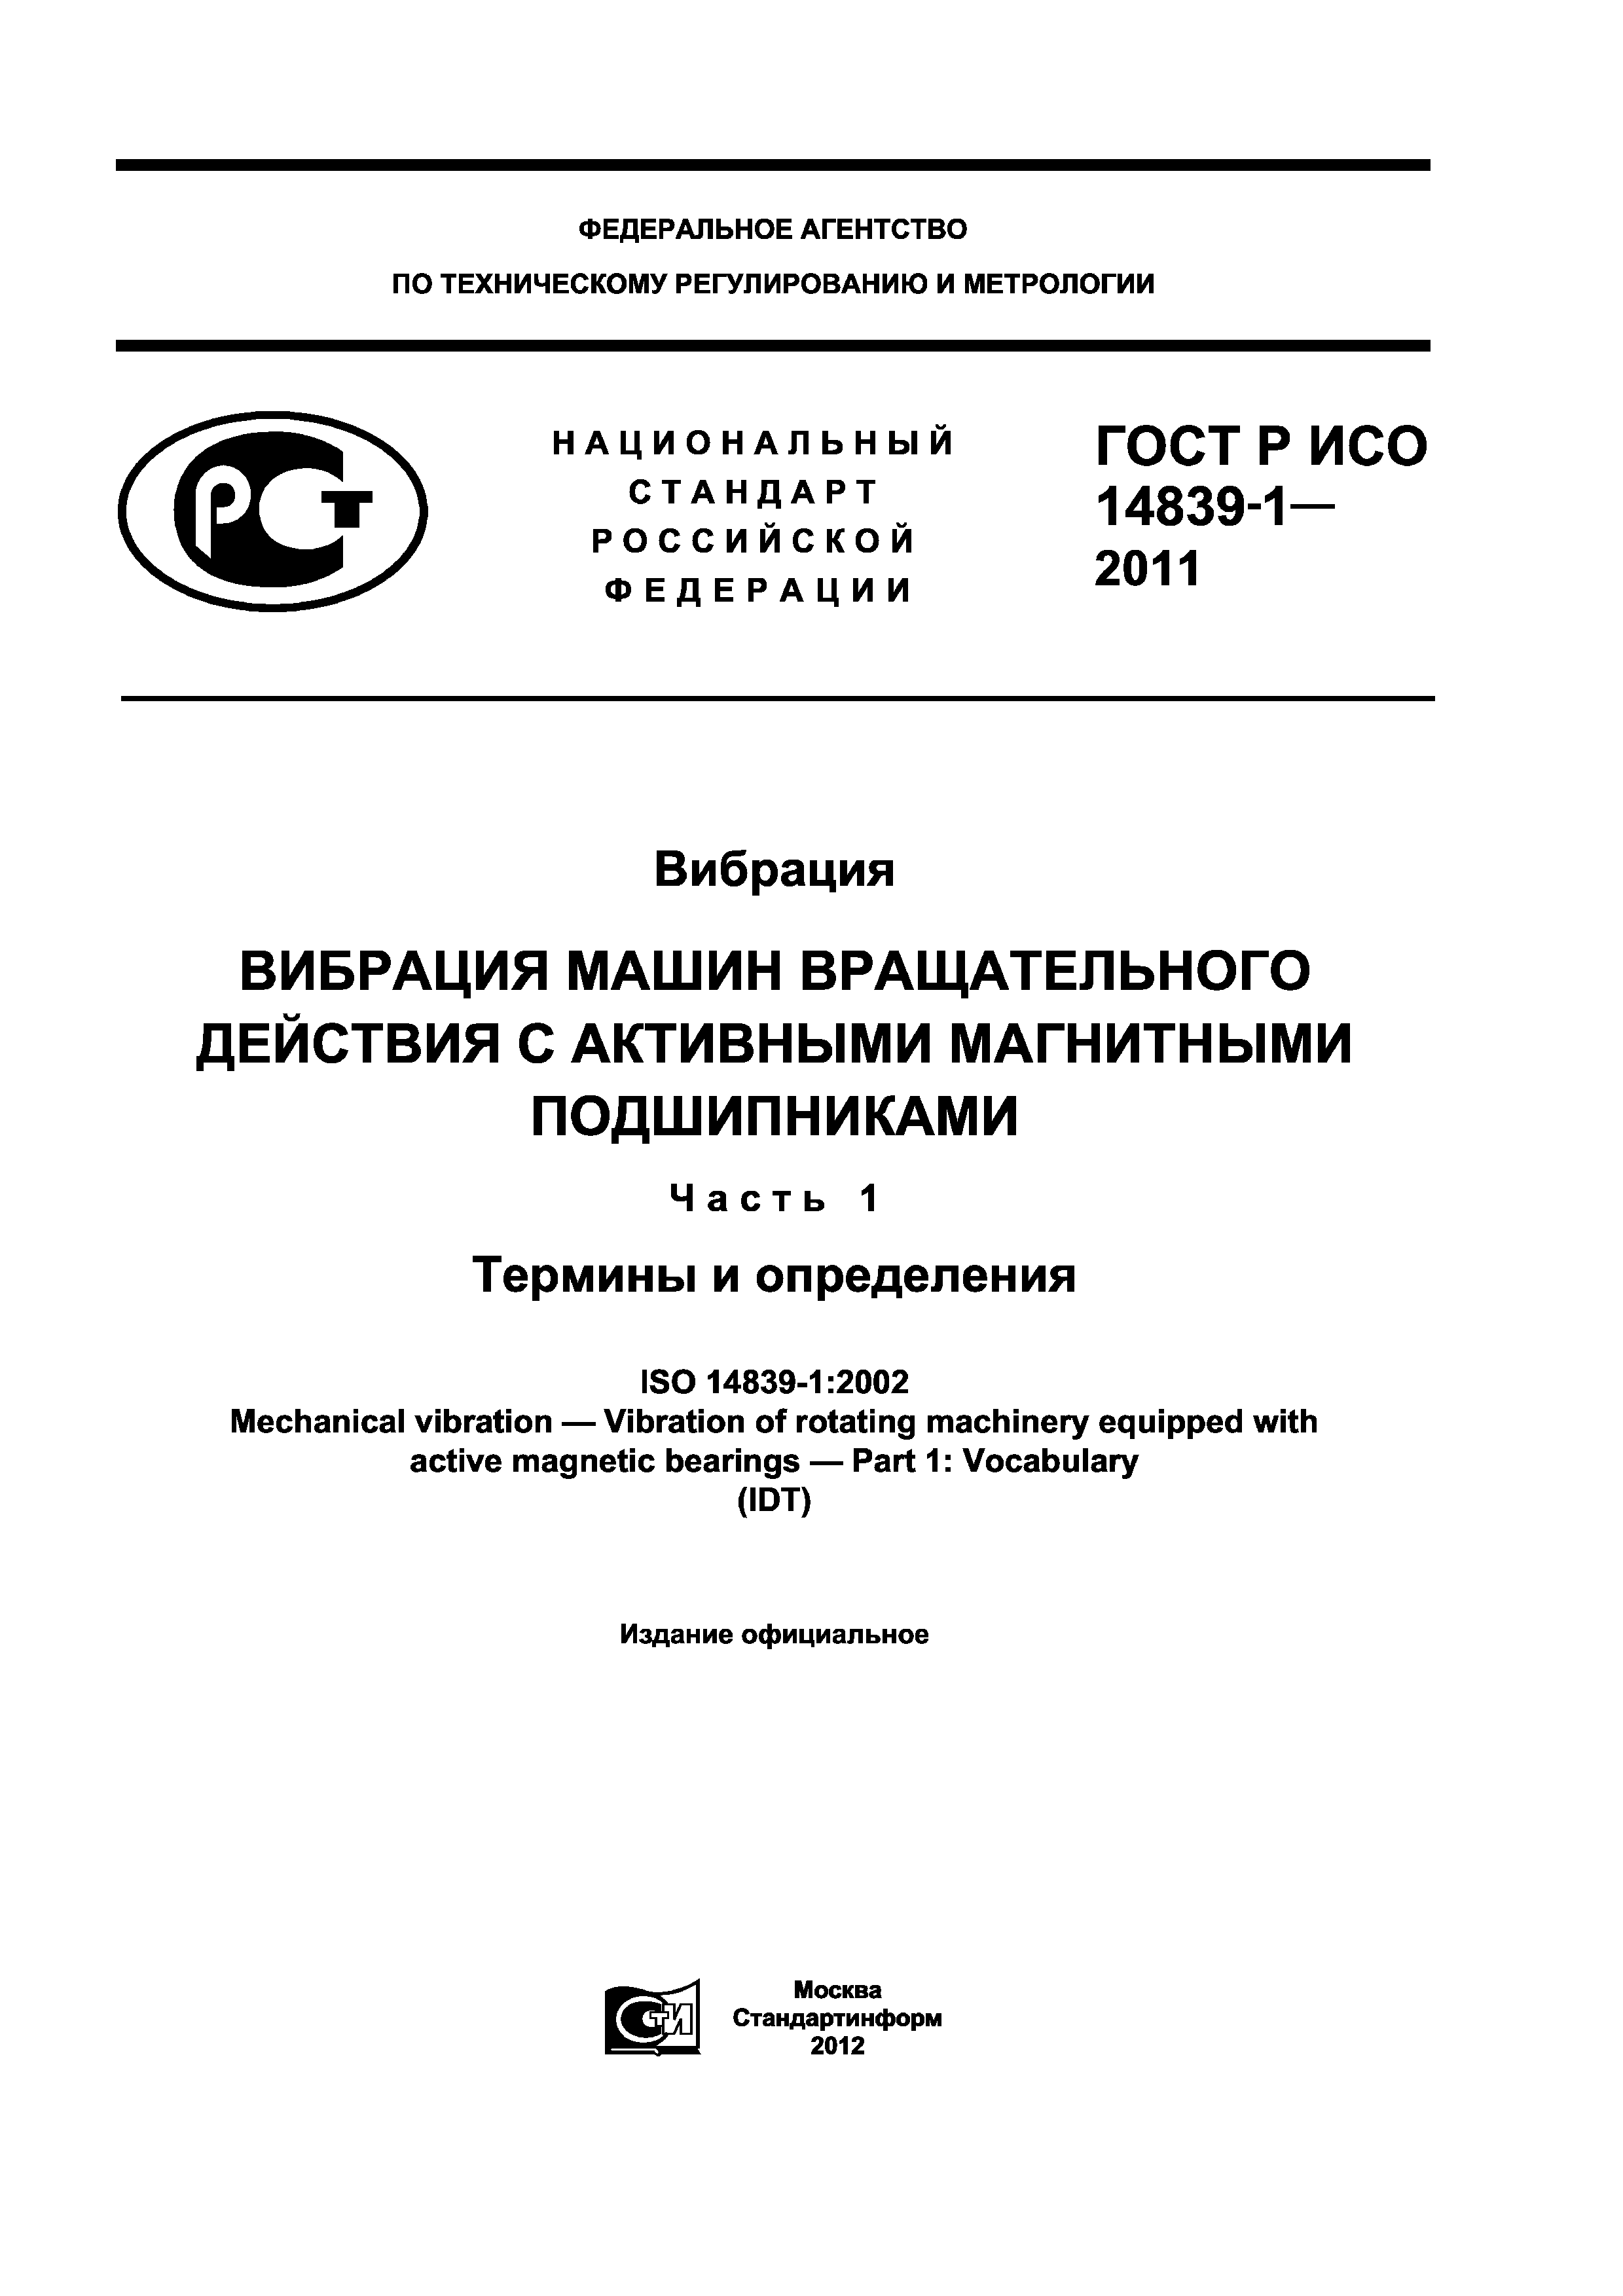 ГОСТ Р ИСО 14839-1-2011